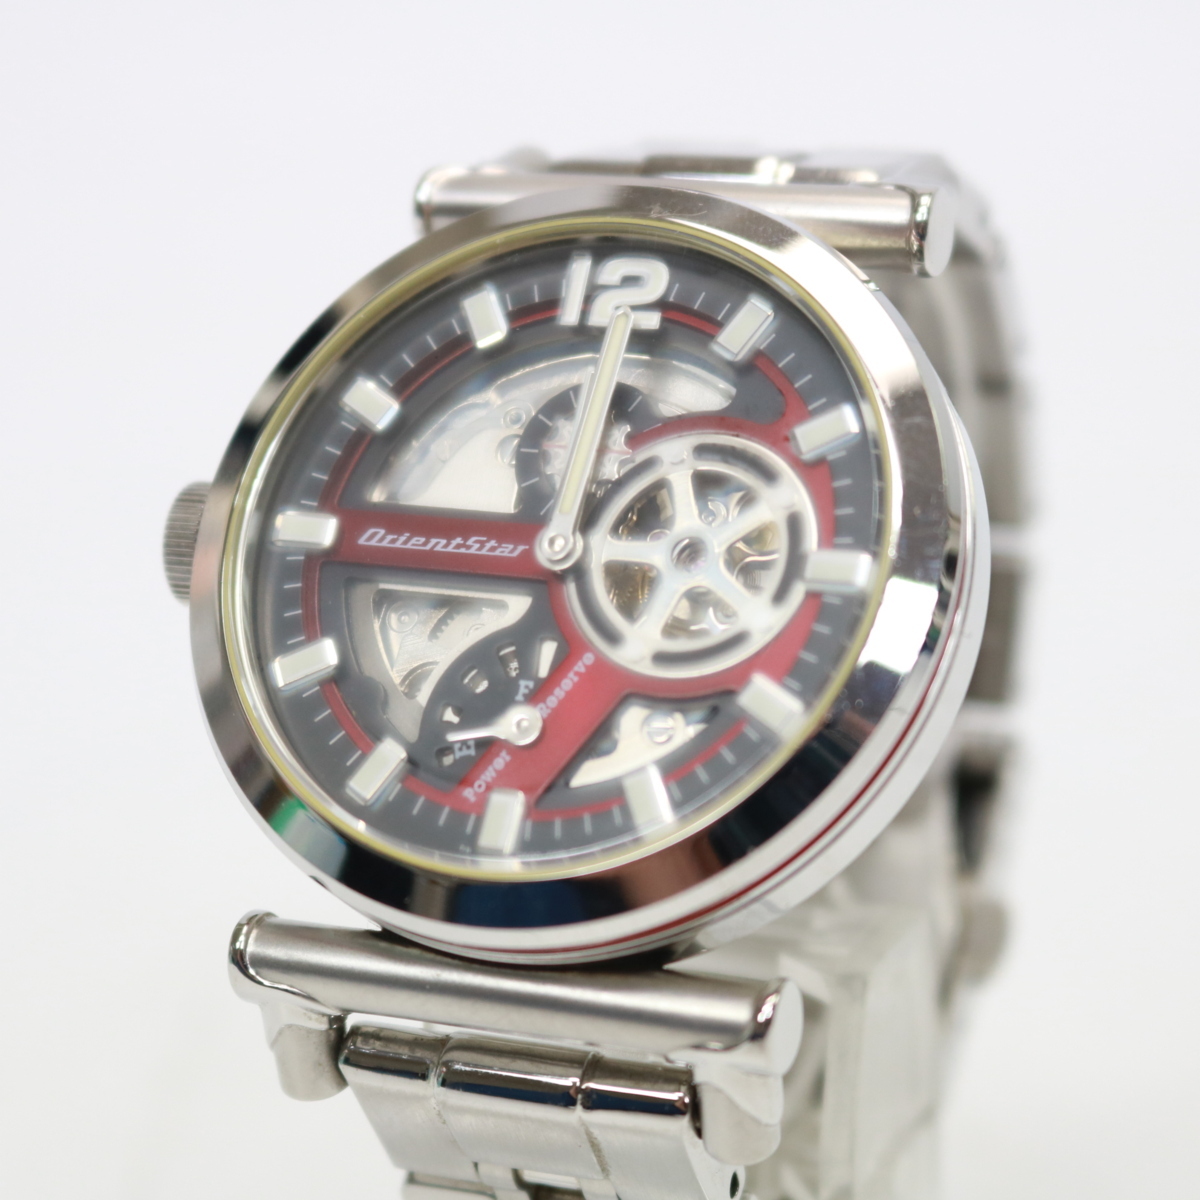 東京都三鷹市にて オリエントスター 腕時計 DK00-C1  を出張買取させて頂きました。